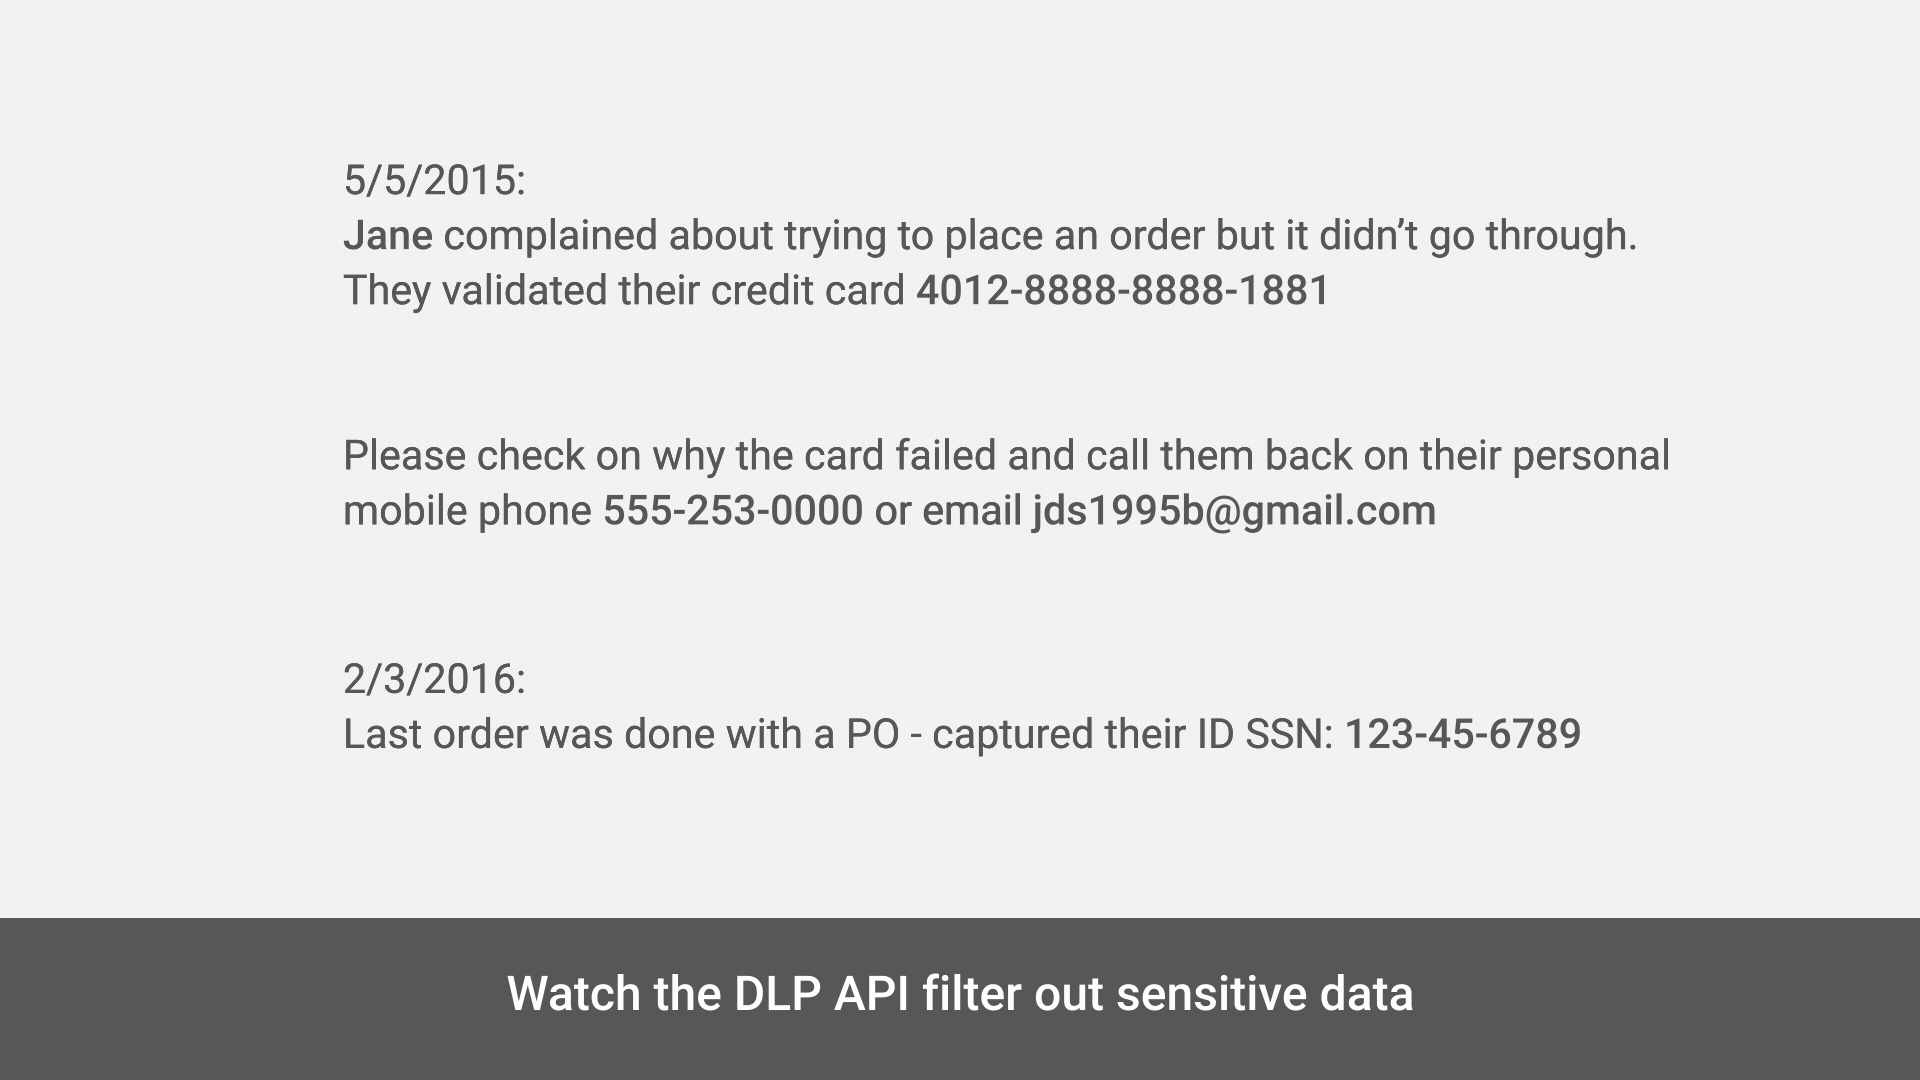 DLP API